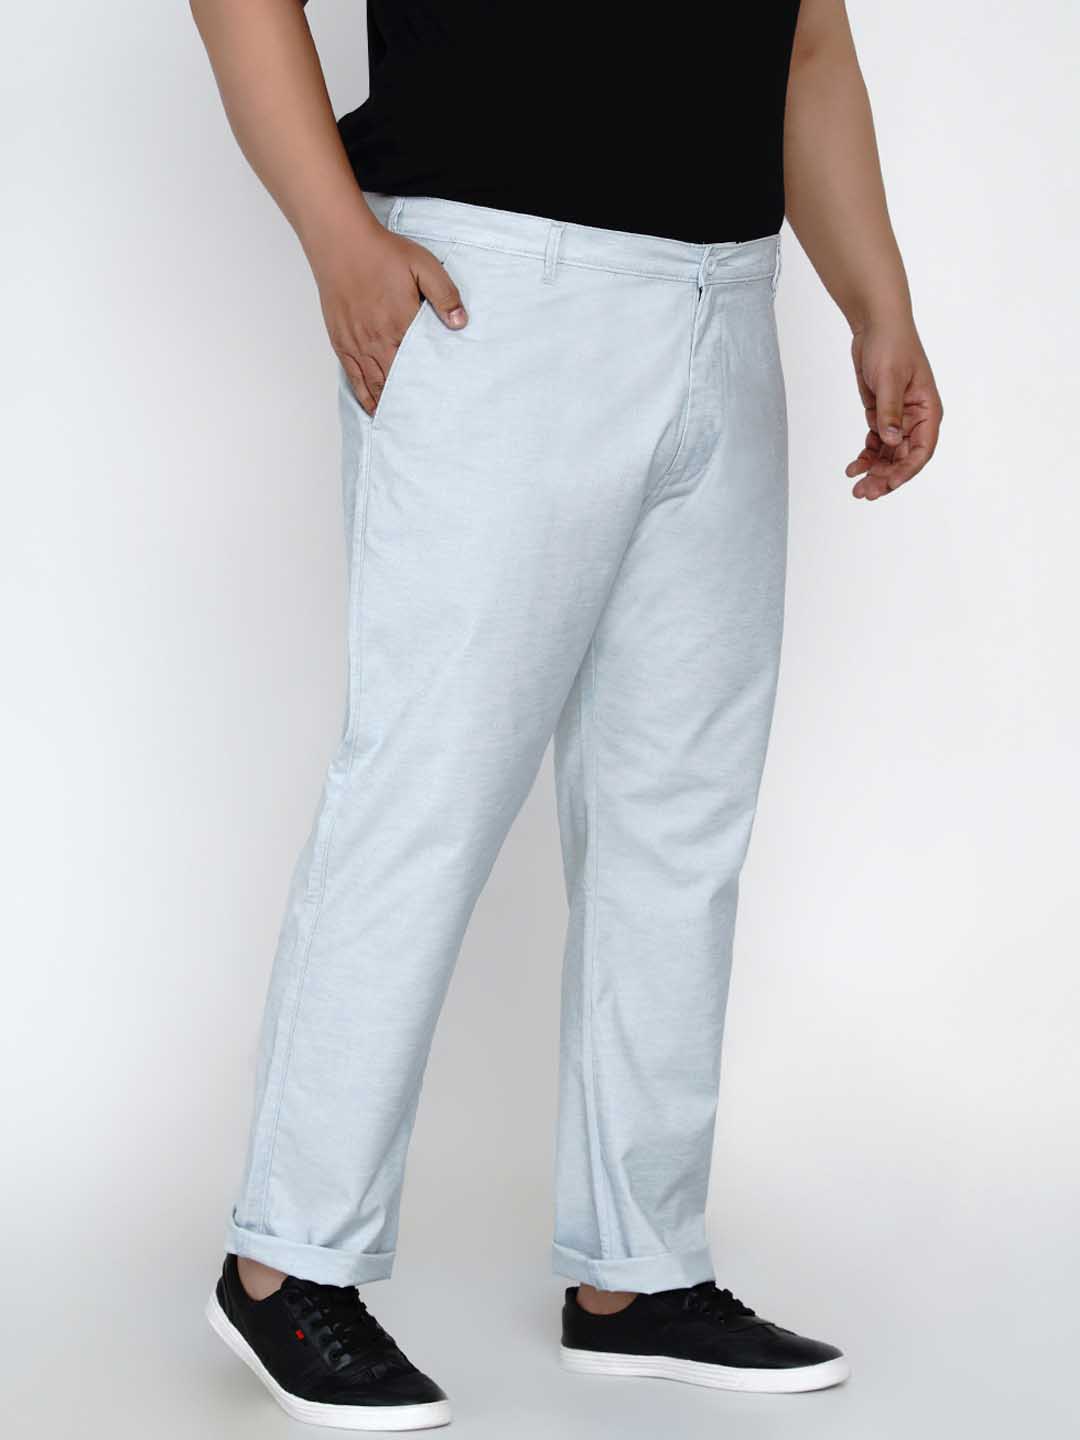 bottomwear/trousers/JPTR2165B/jptr2165b-2.jpg